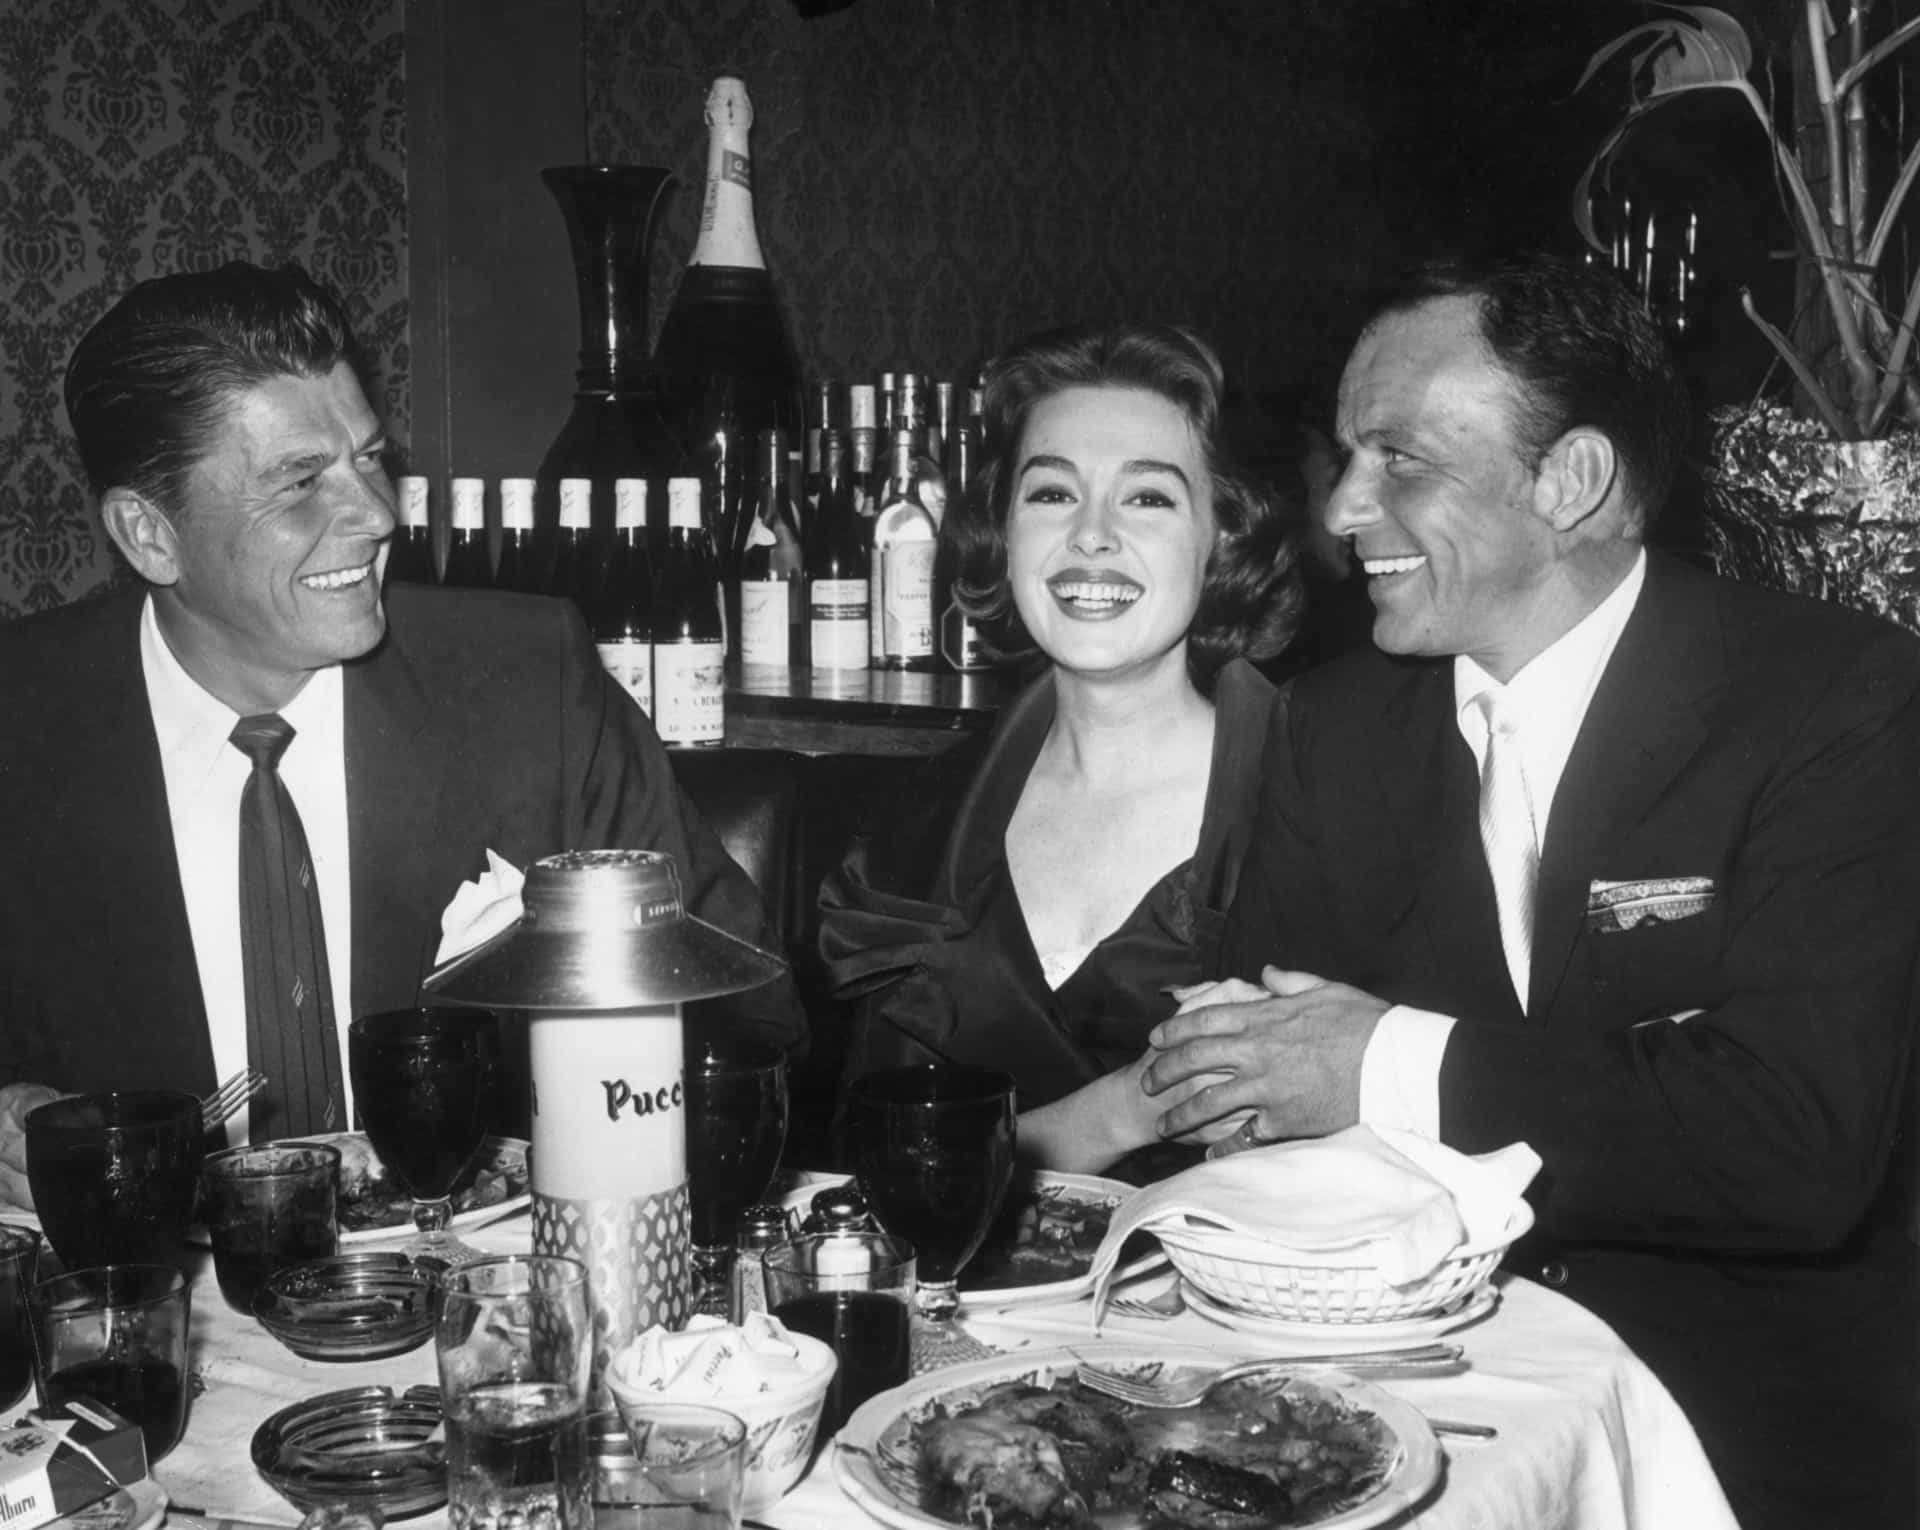 Die Schauspieler Ronald Reagan, Barbara Rush und Frank Sinatra speisen nach der Premiere von Sinatras Film "Ein Loch im Kopf" im Puccini's.